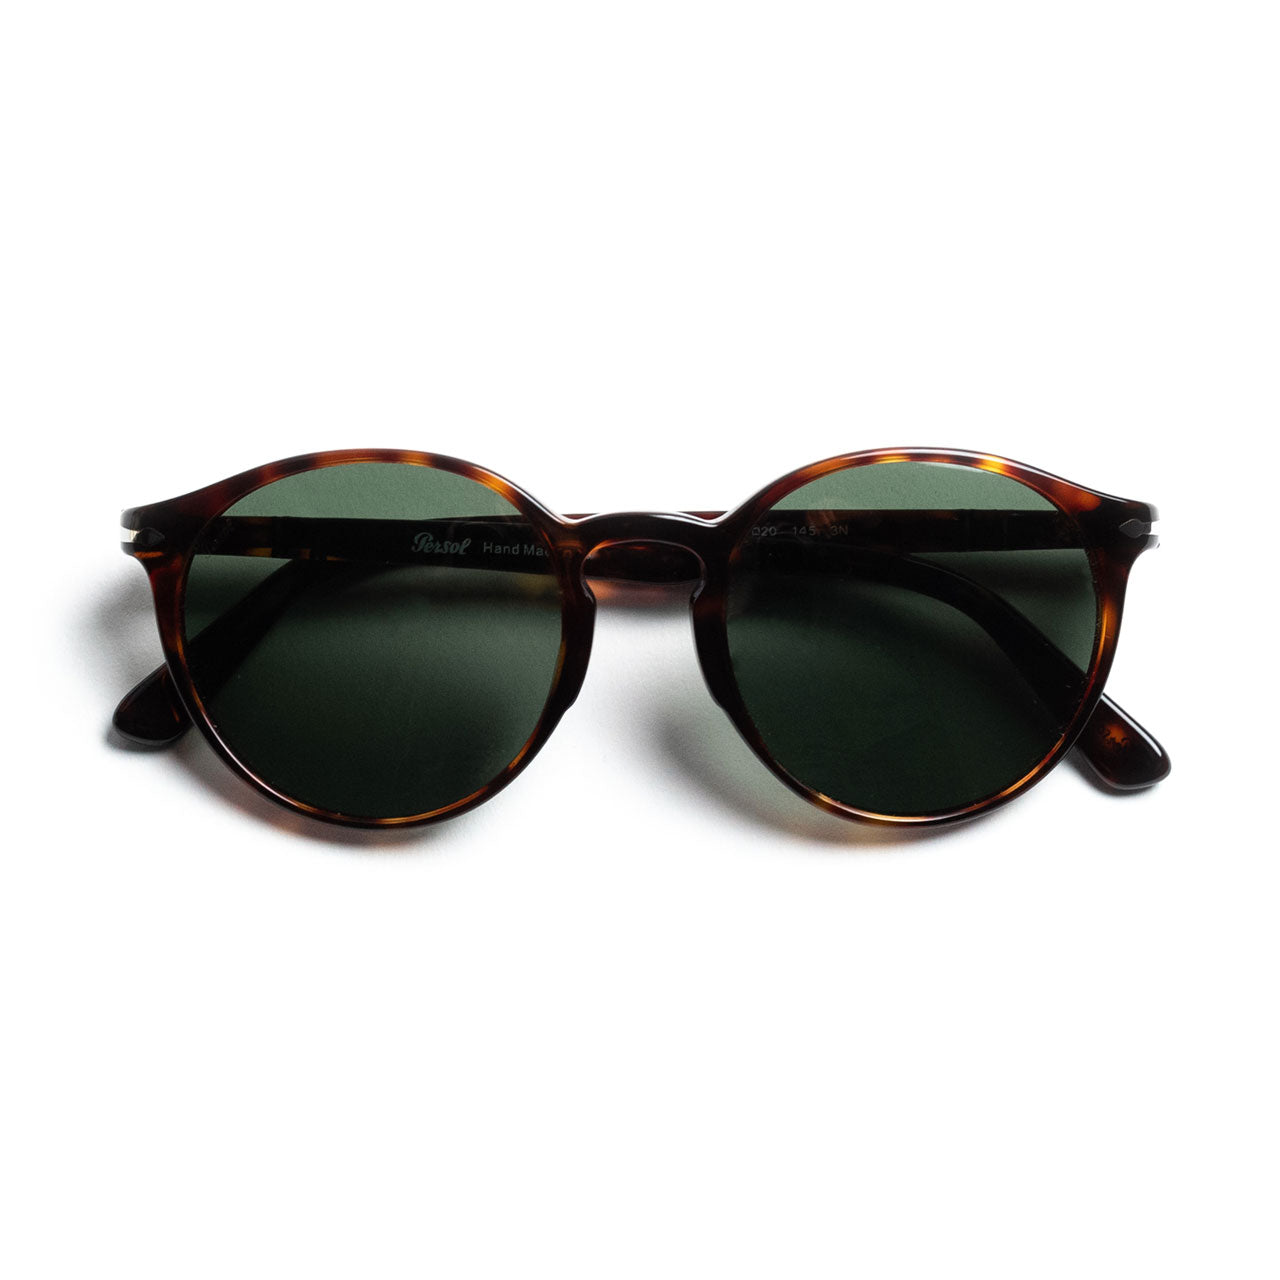 Persol 3171S Sunglasses